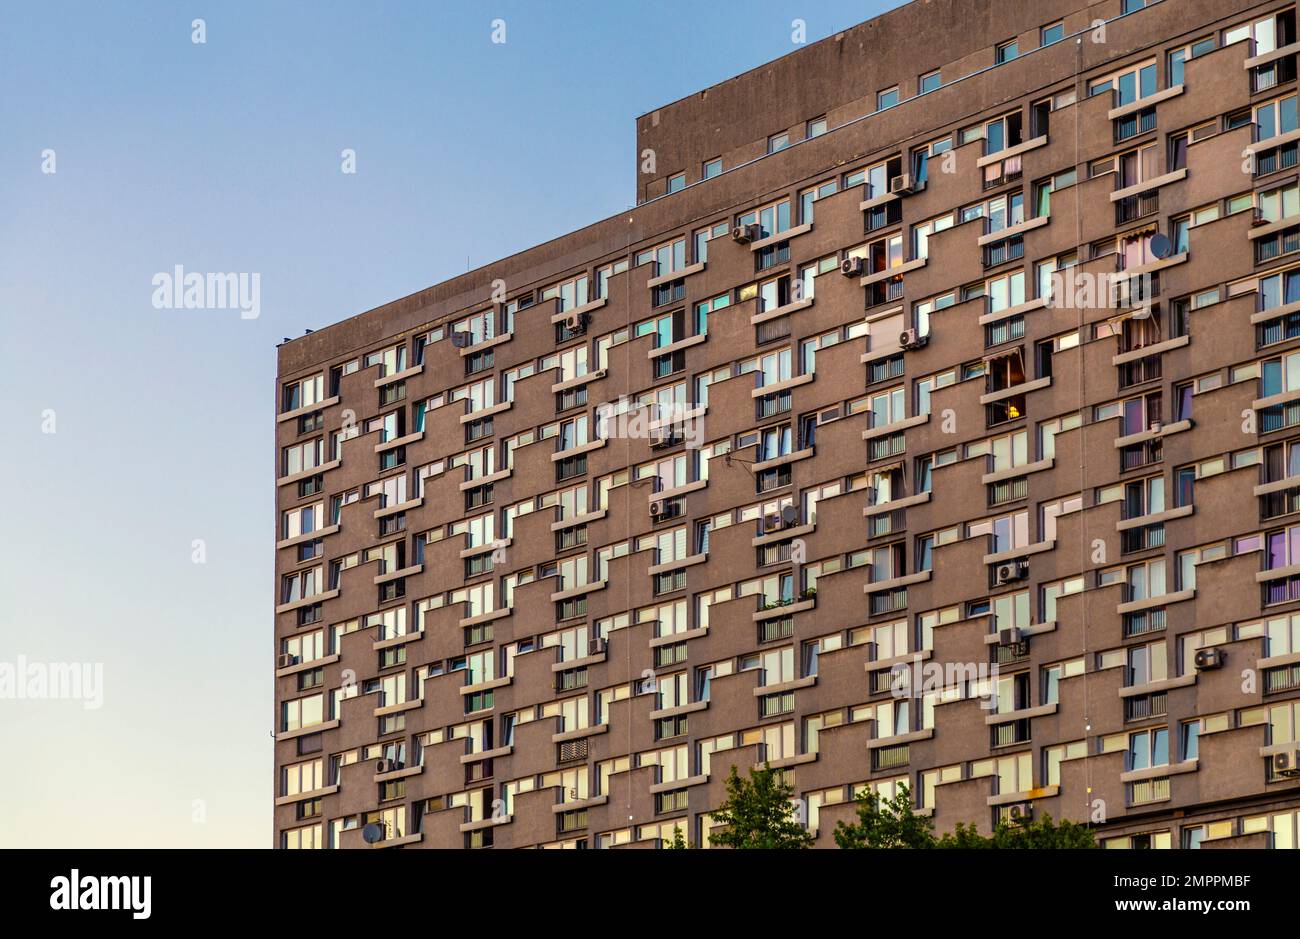 1960s 1970s blocs d'appartements en béton de style communiste, Śródmieście, Varsovie Banque D'Images